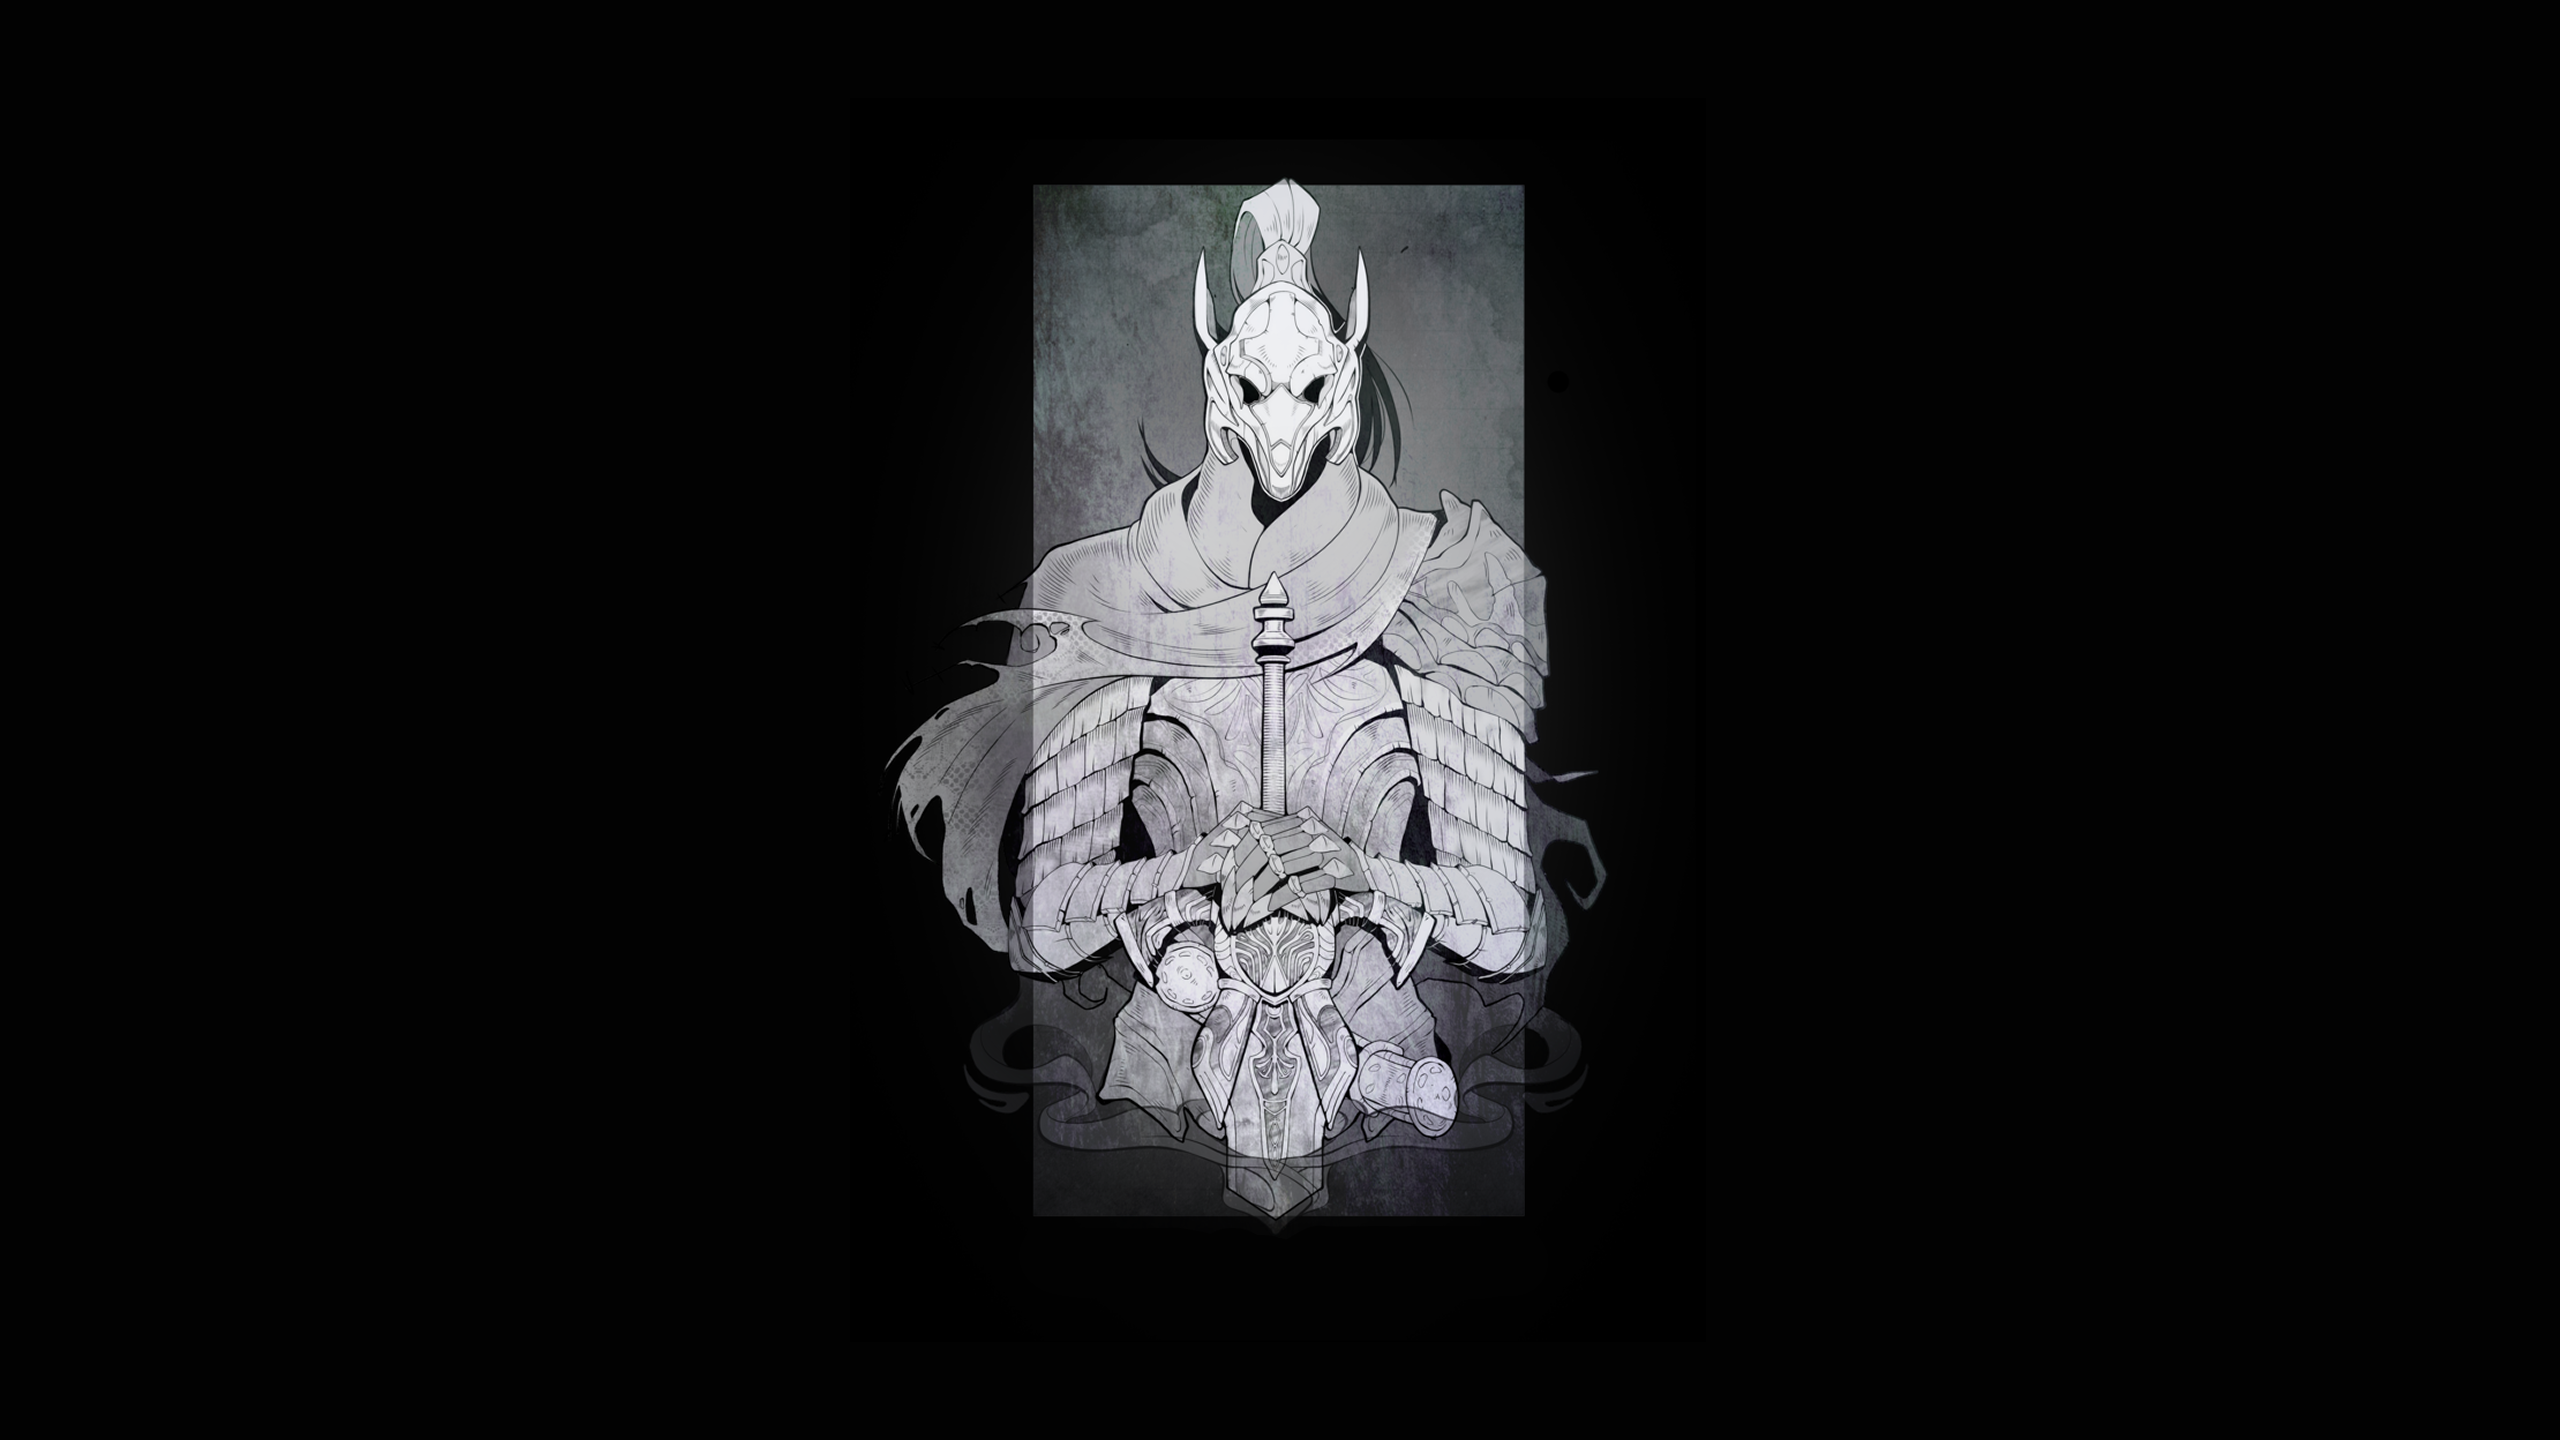 Dark Souls Artorias The Abysswalker Knight Armor Wallpaper -  Resolution:2560x1440 - ID:1215413 